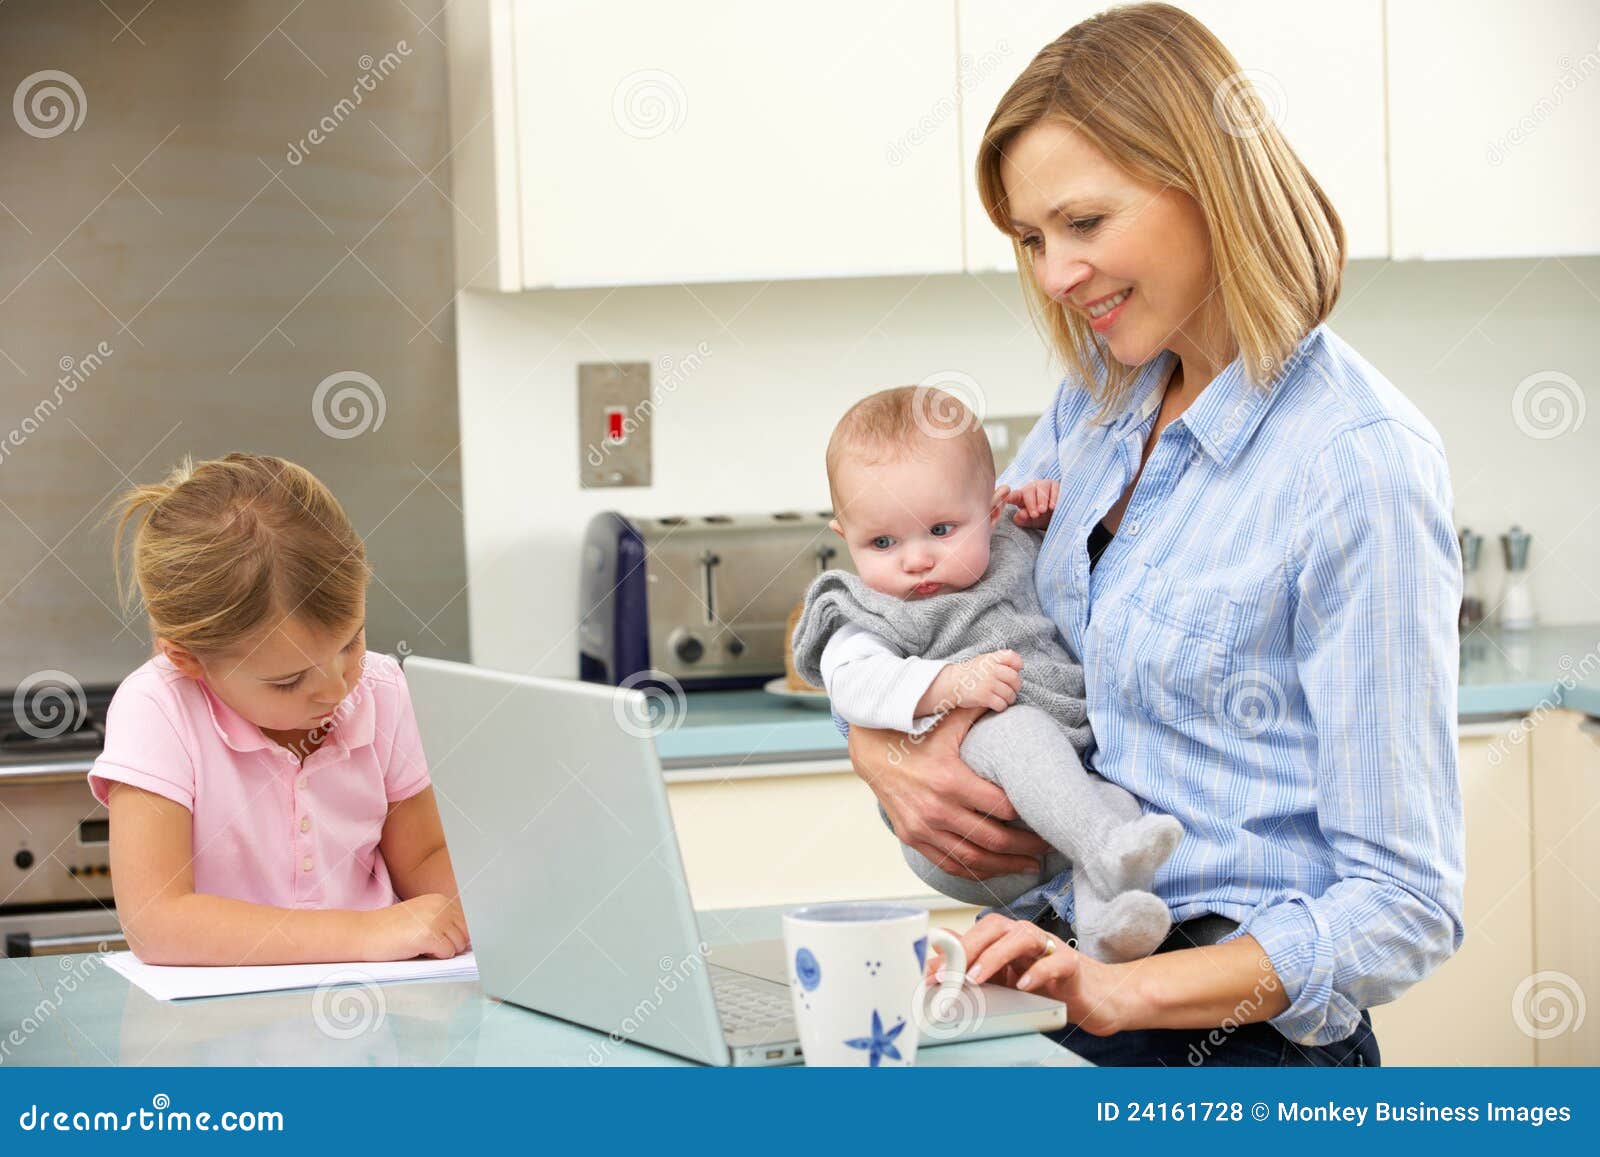 Mère avec des enfants à l'aide de l'ordinateur portatif dans la cuisine domestique